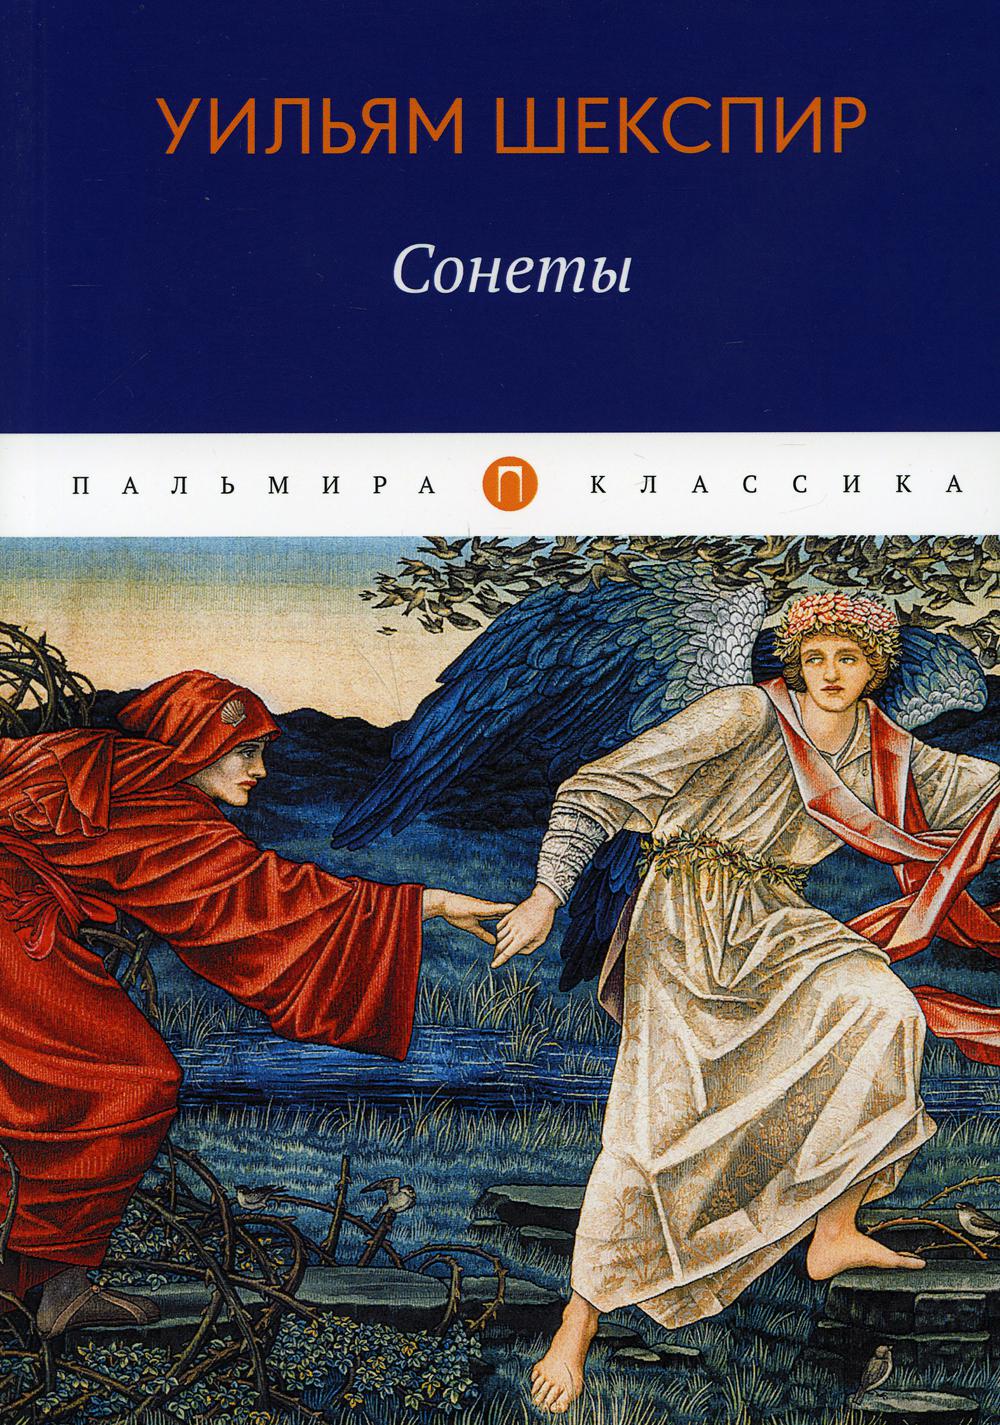 Книга Сонеты - купить классической литературы в интернет-магазинах, цены в Москве на Мегамаркет | 10233760